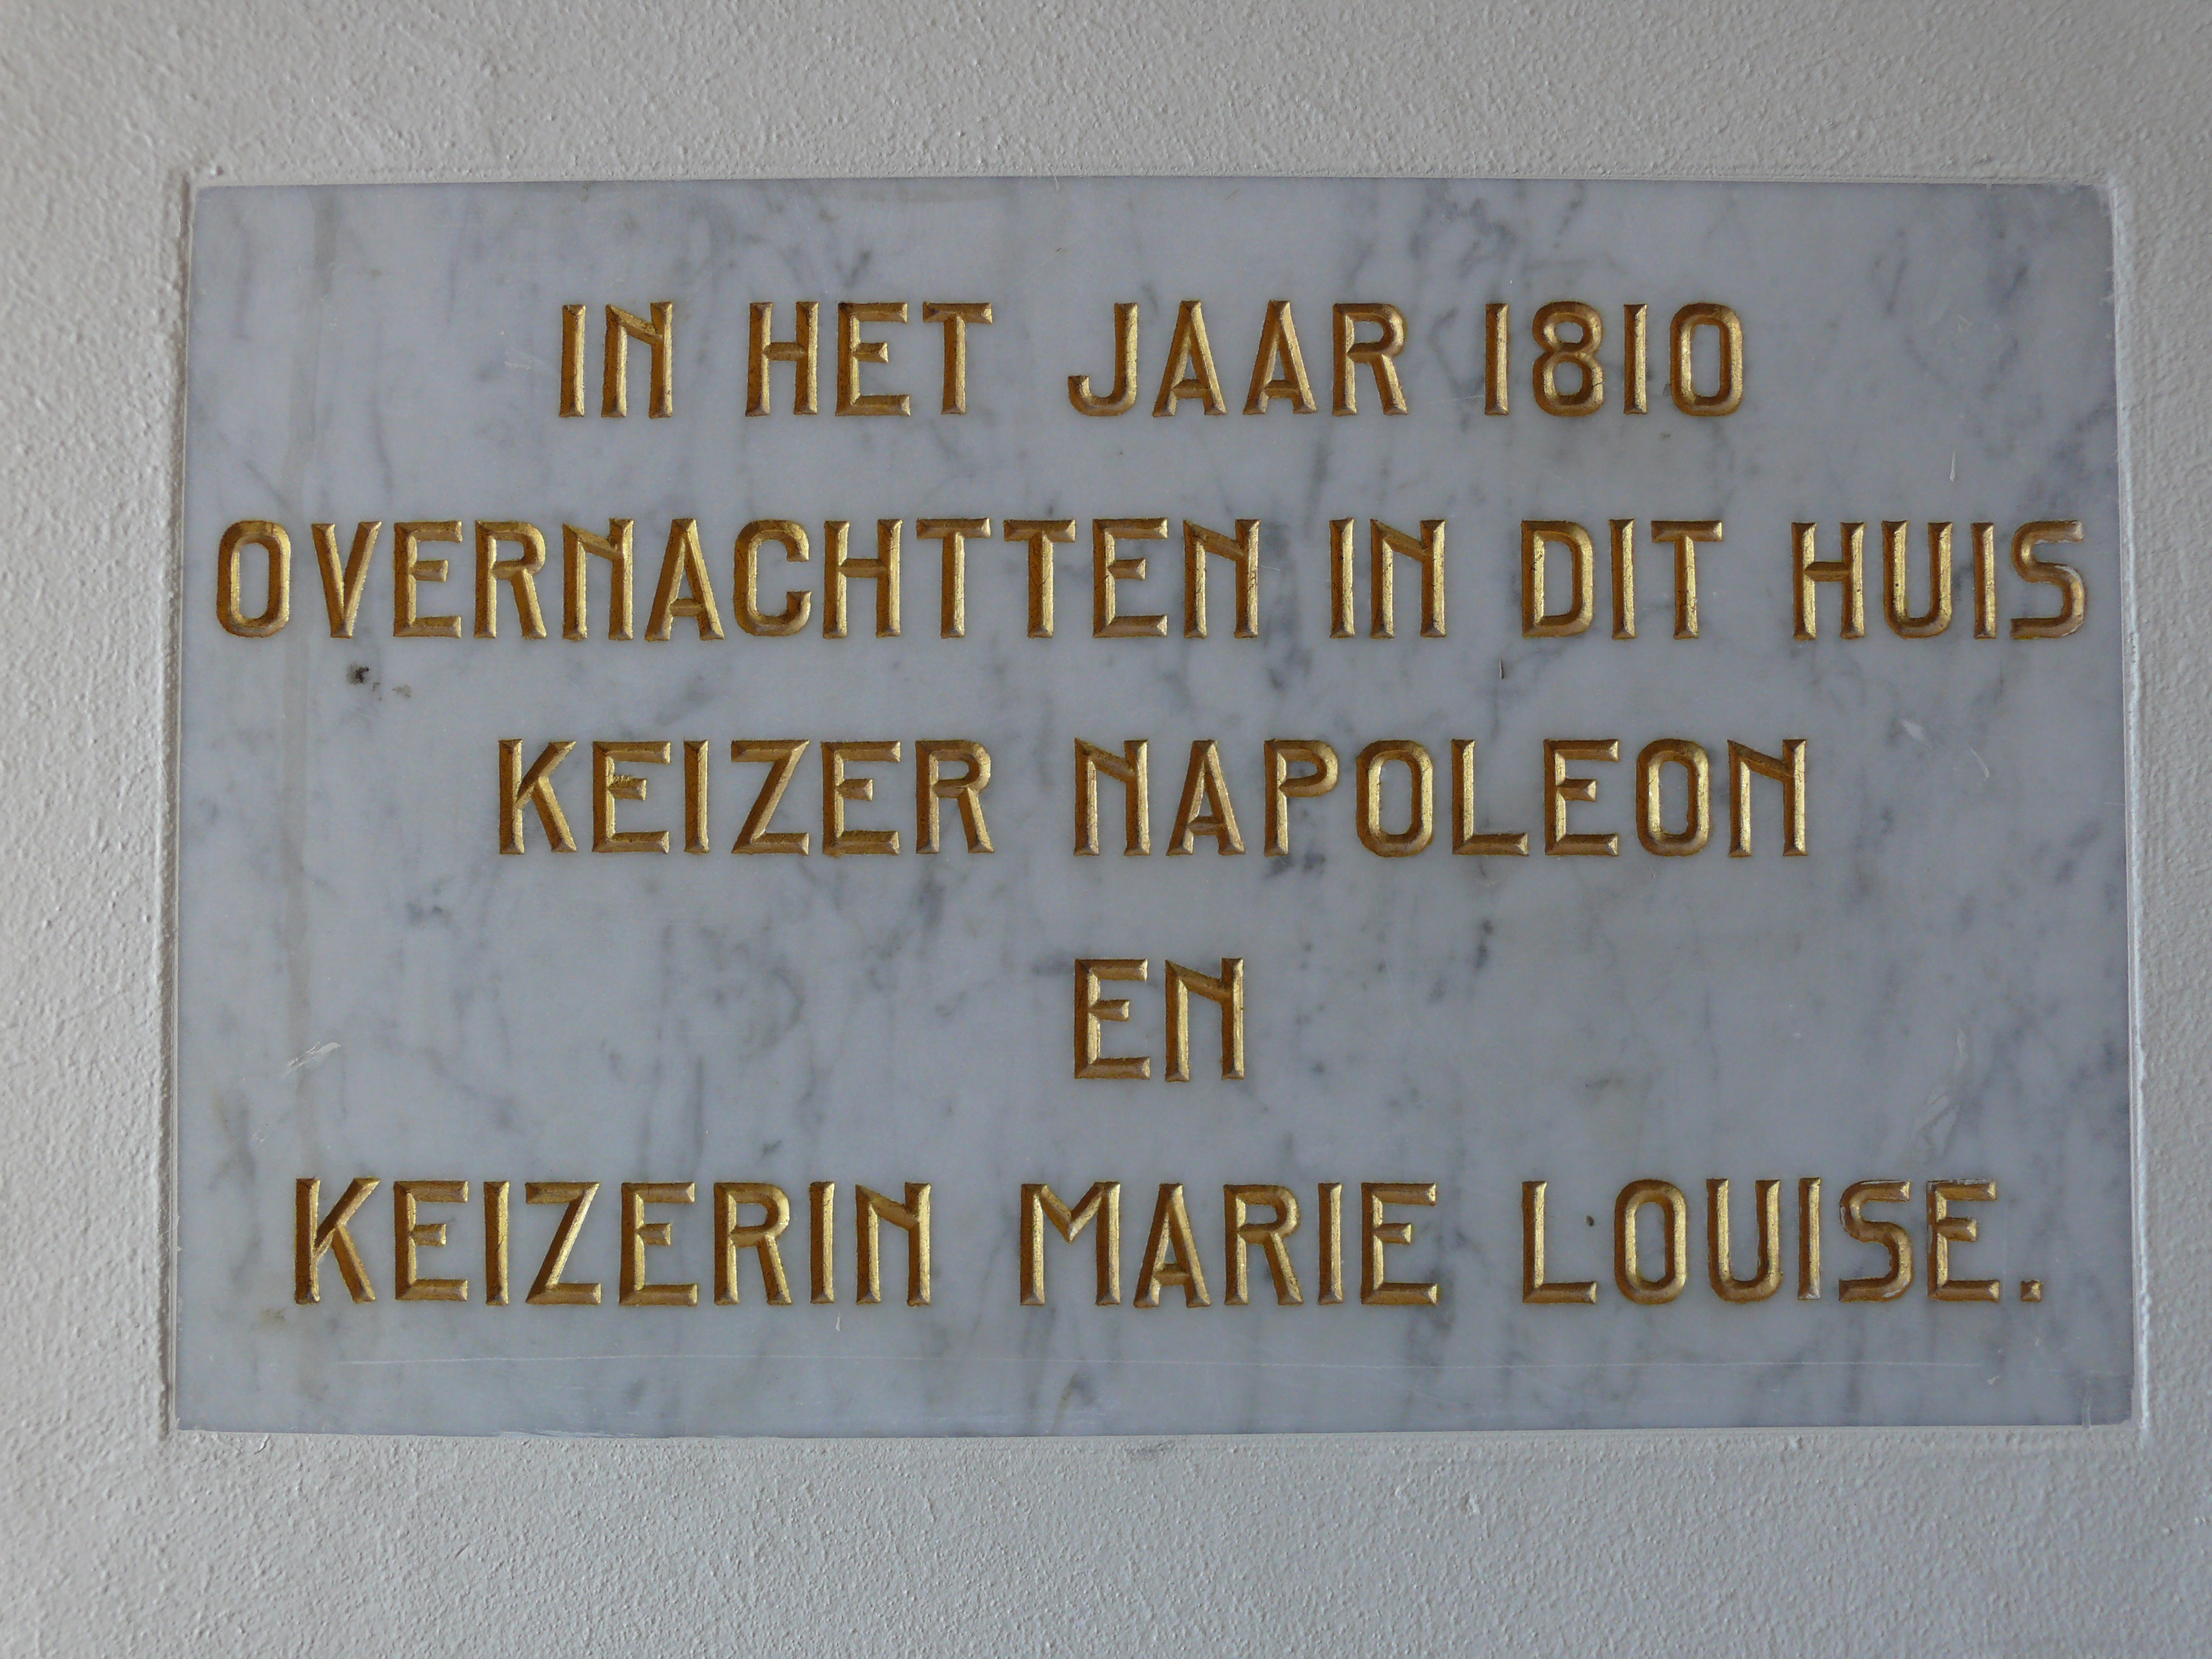 Foute gedenksteen in Grote Markt 17. Slechts Lodewijk Napoleon overnachtte hier, in 1809.